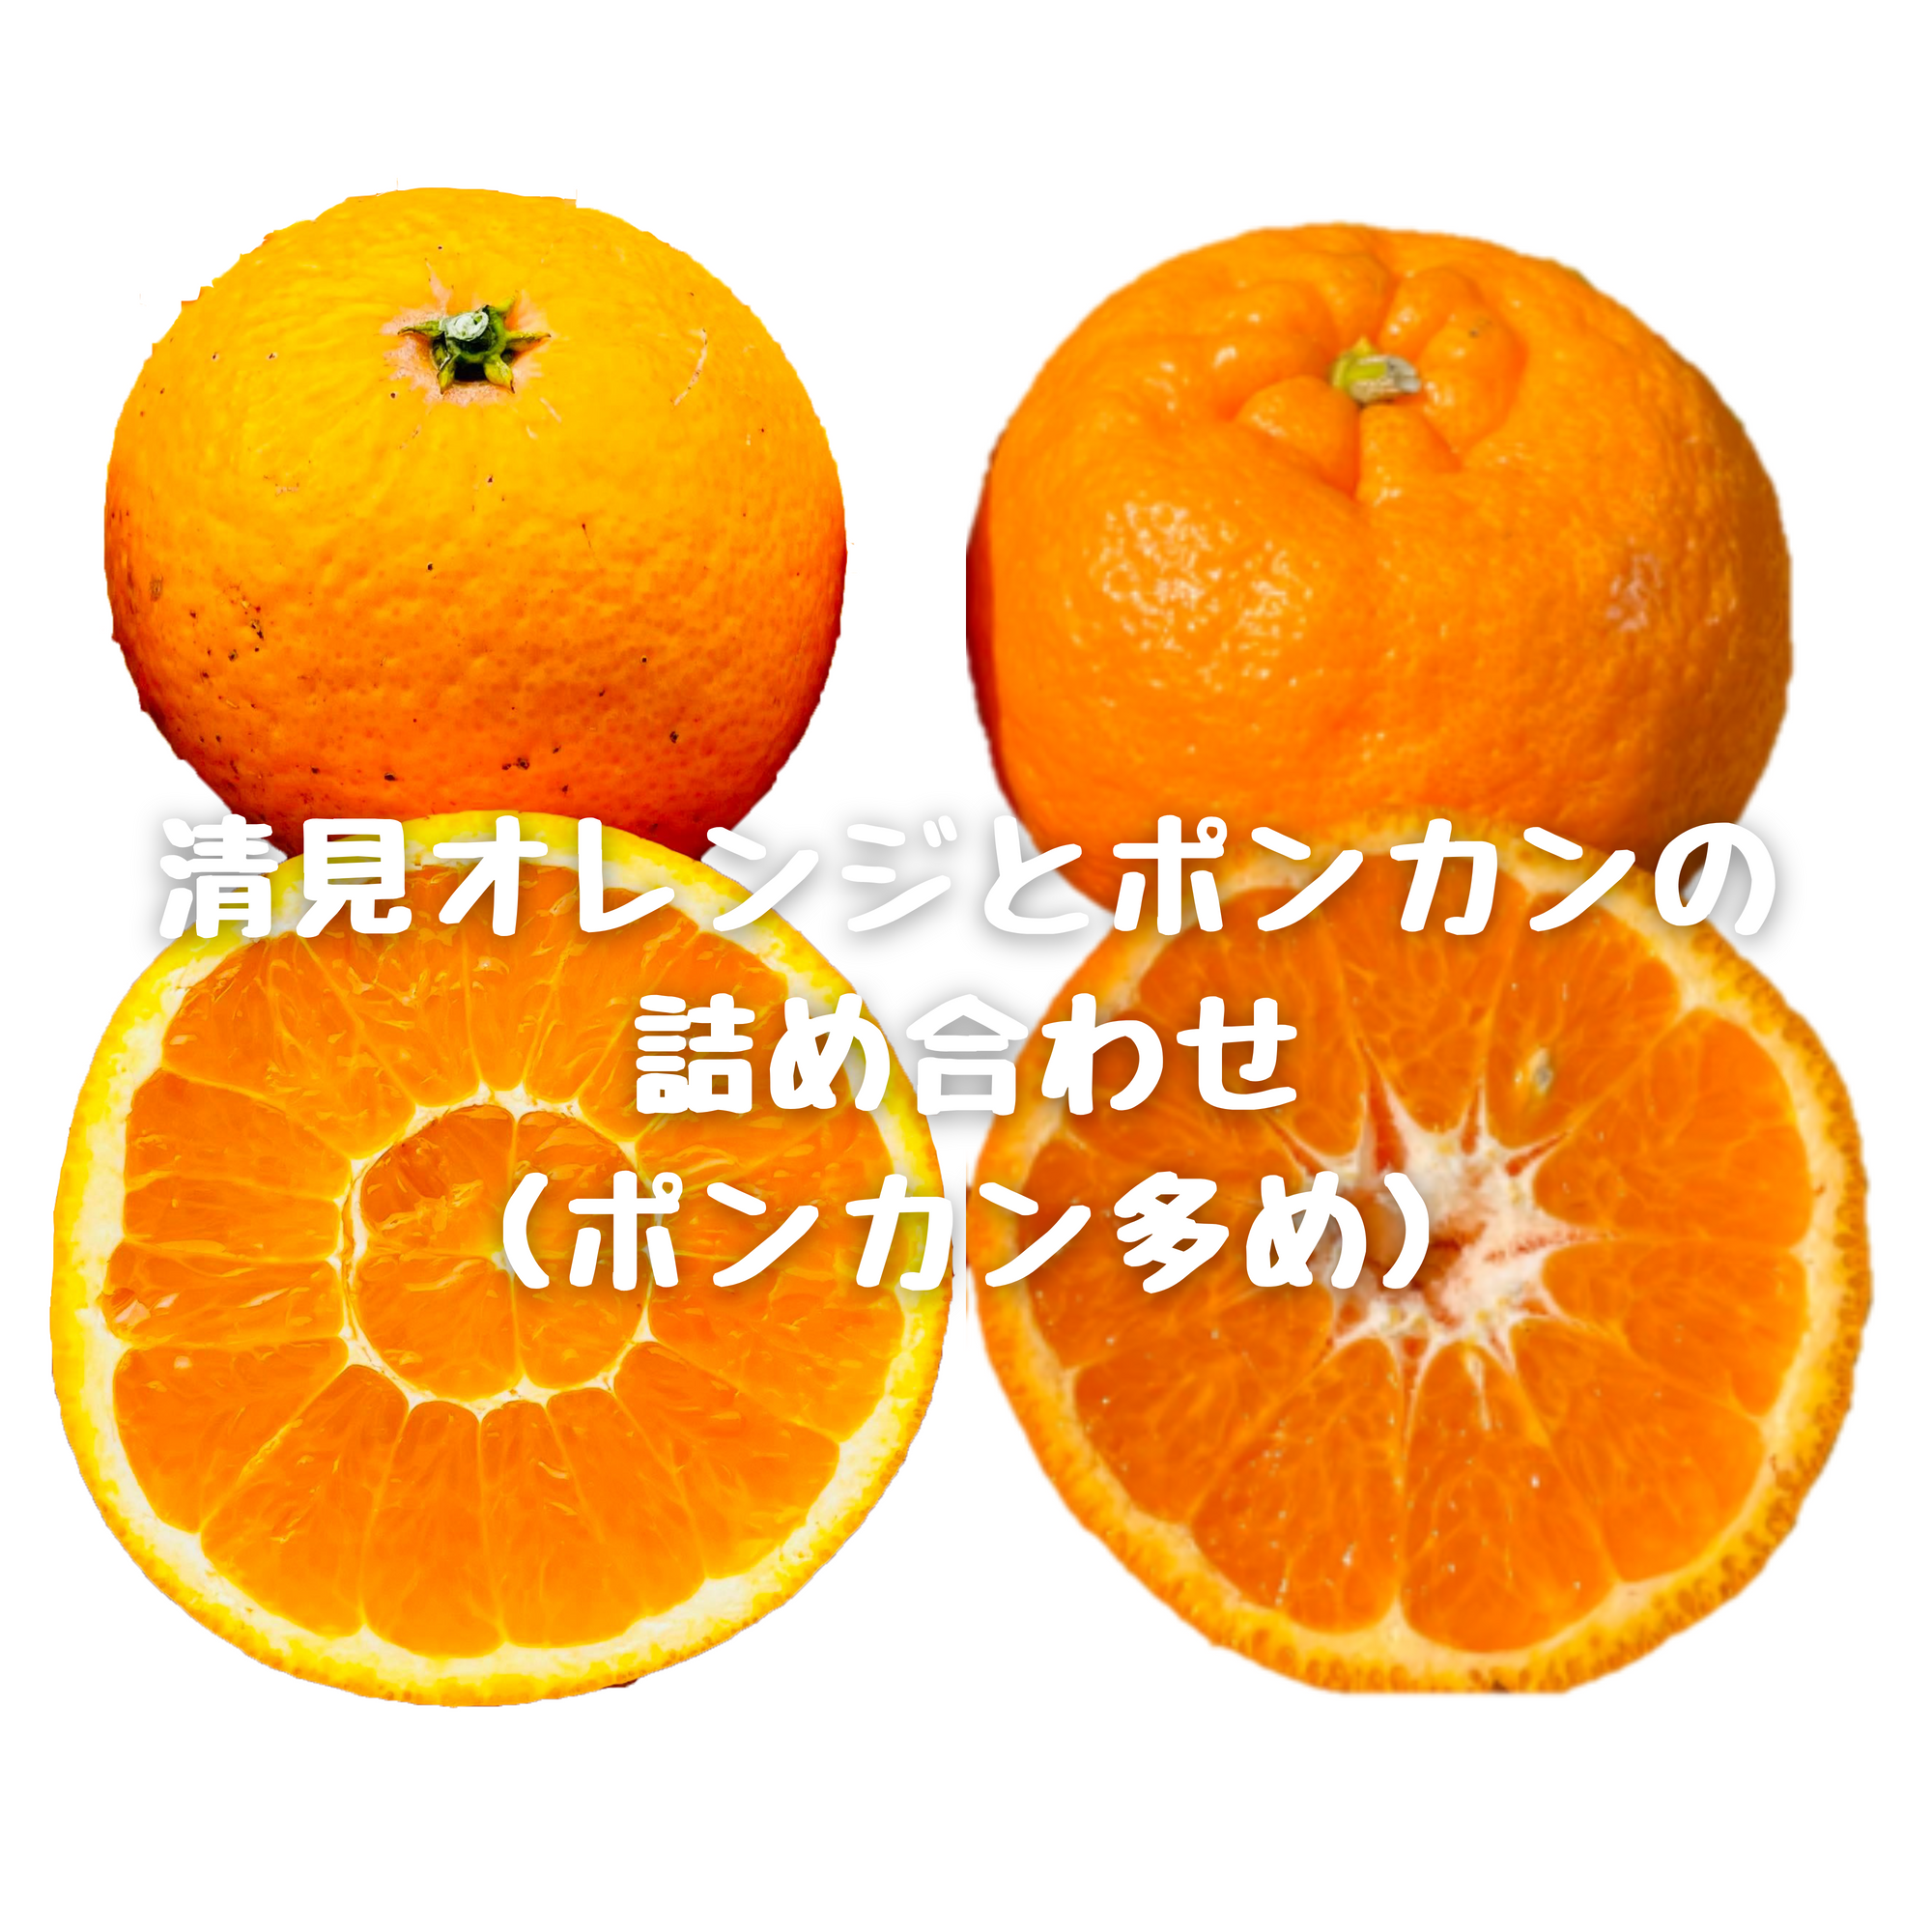 清見オレンジとポンカン(甘ポン)の詰め合わせ(ポンカン多め)